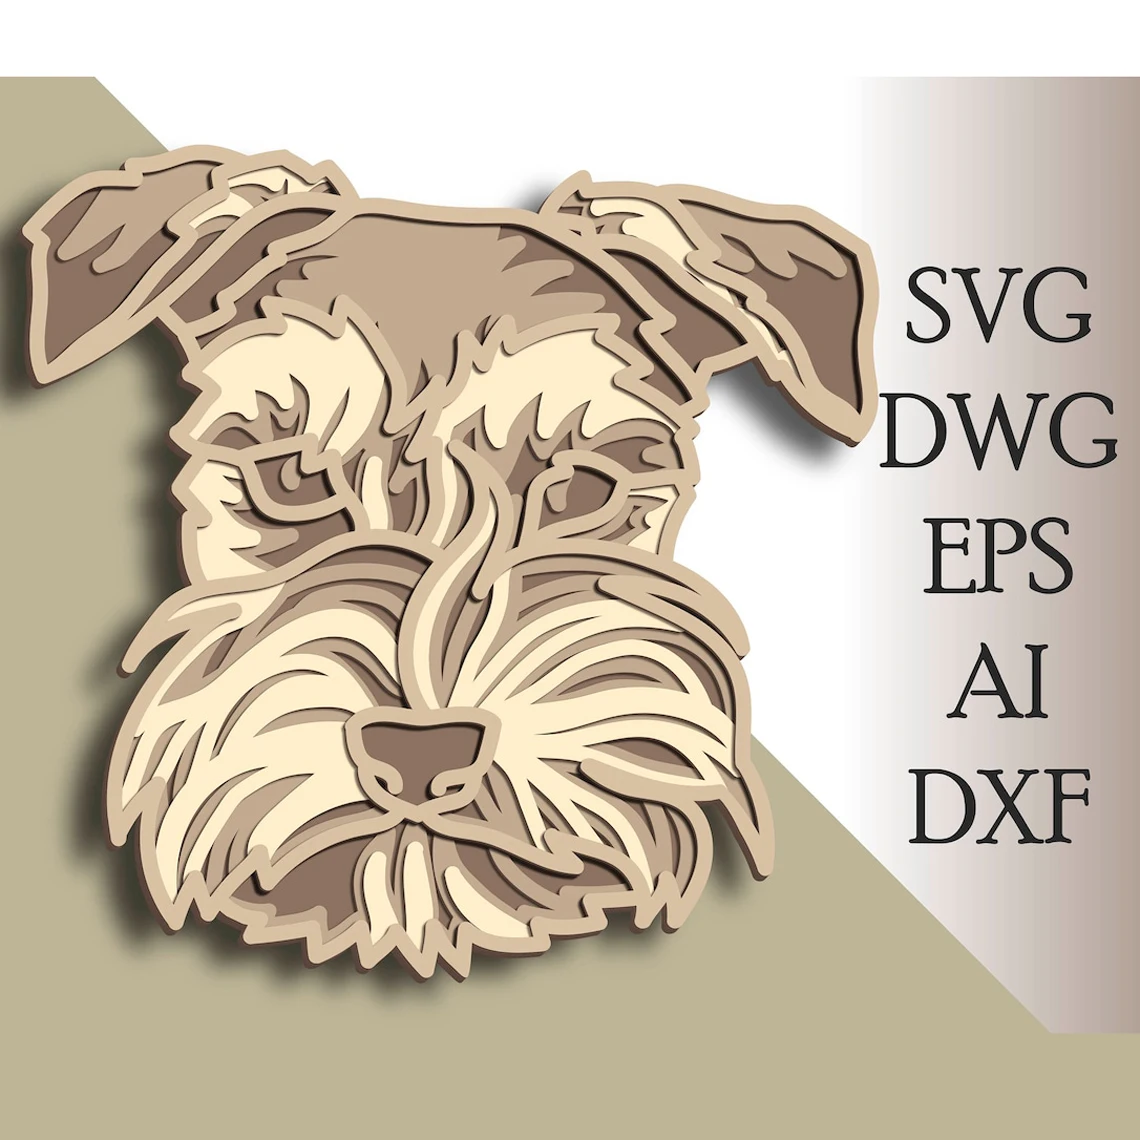 Многослойная Векторная модель собаки домашний декор настенное искусство DWG DXF сoг